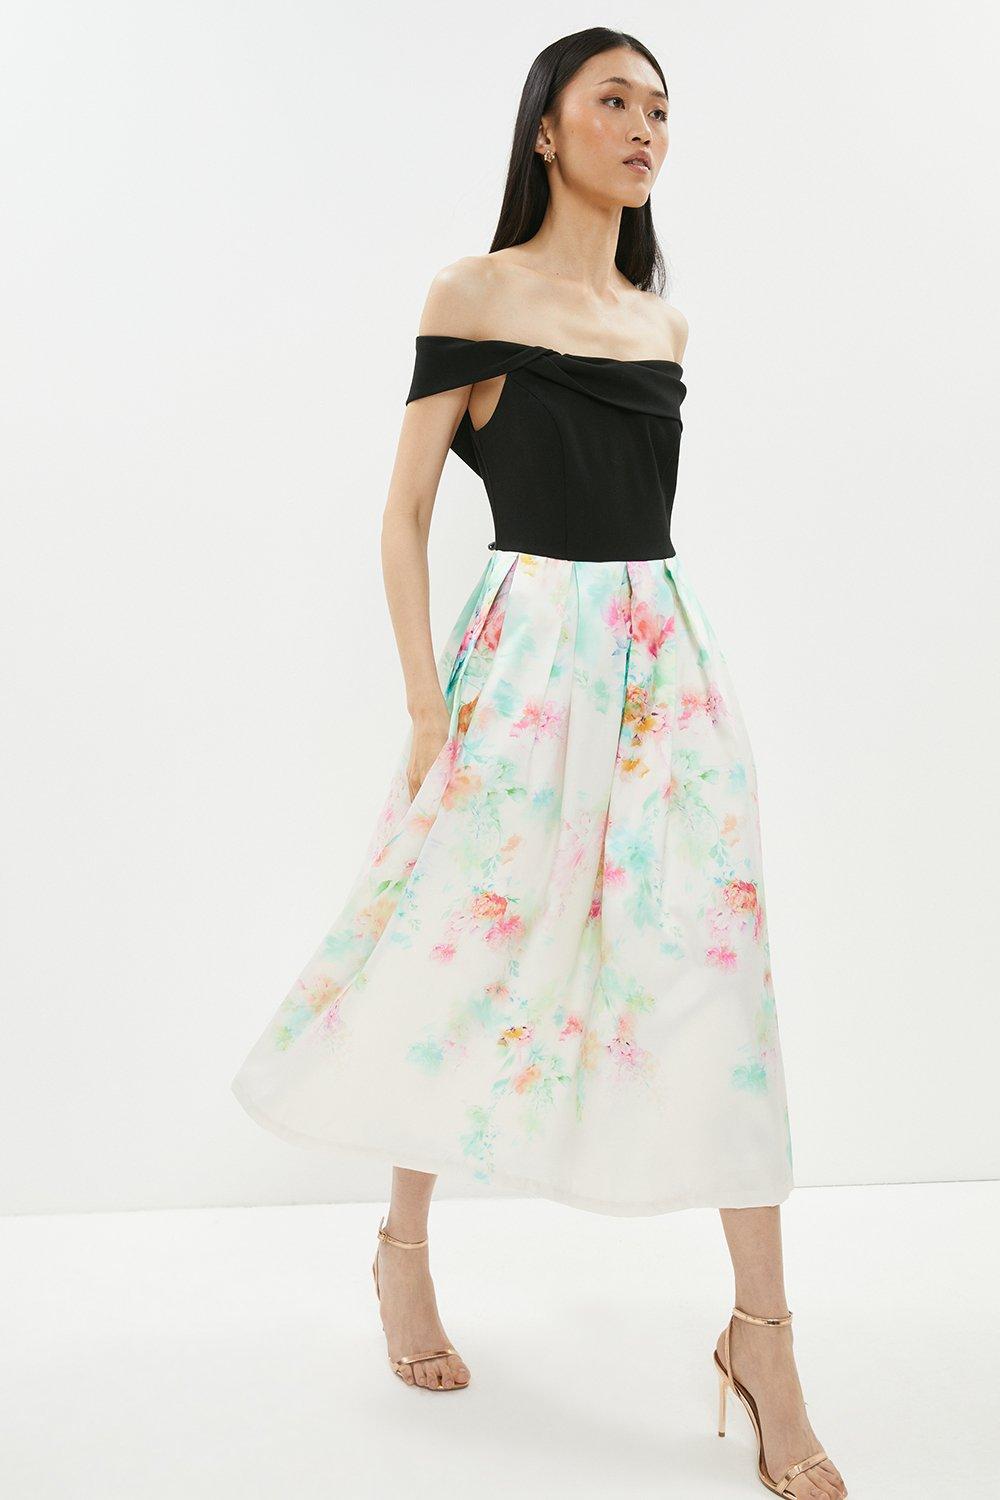 Bardot 2 In 1 Printed Twill Skirt Midi Dress